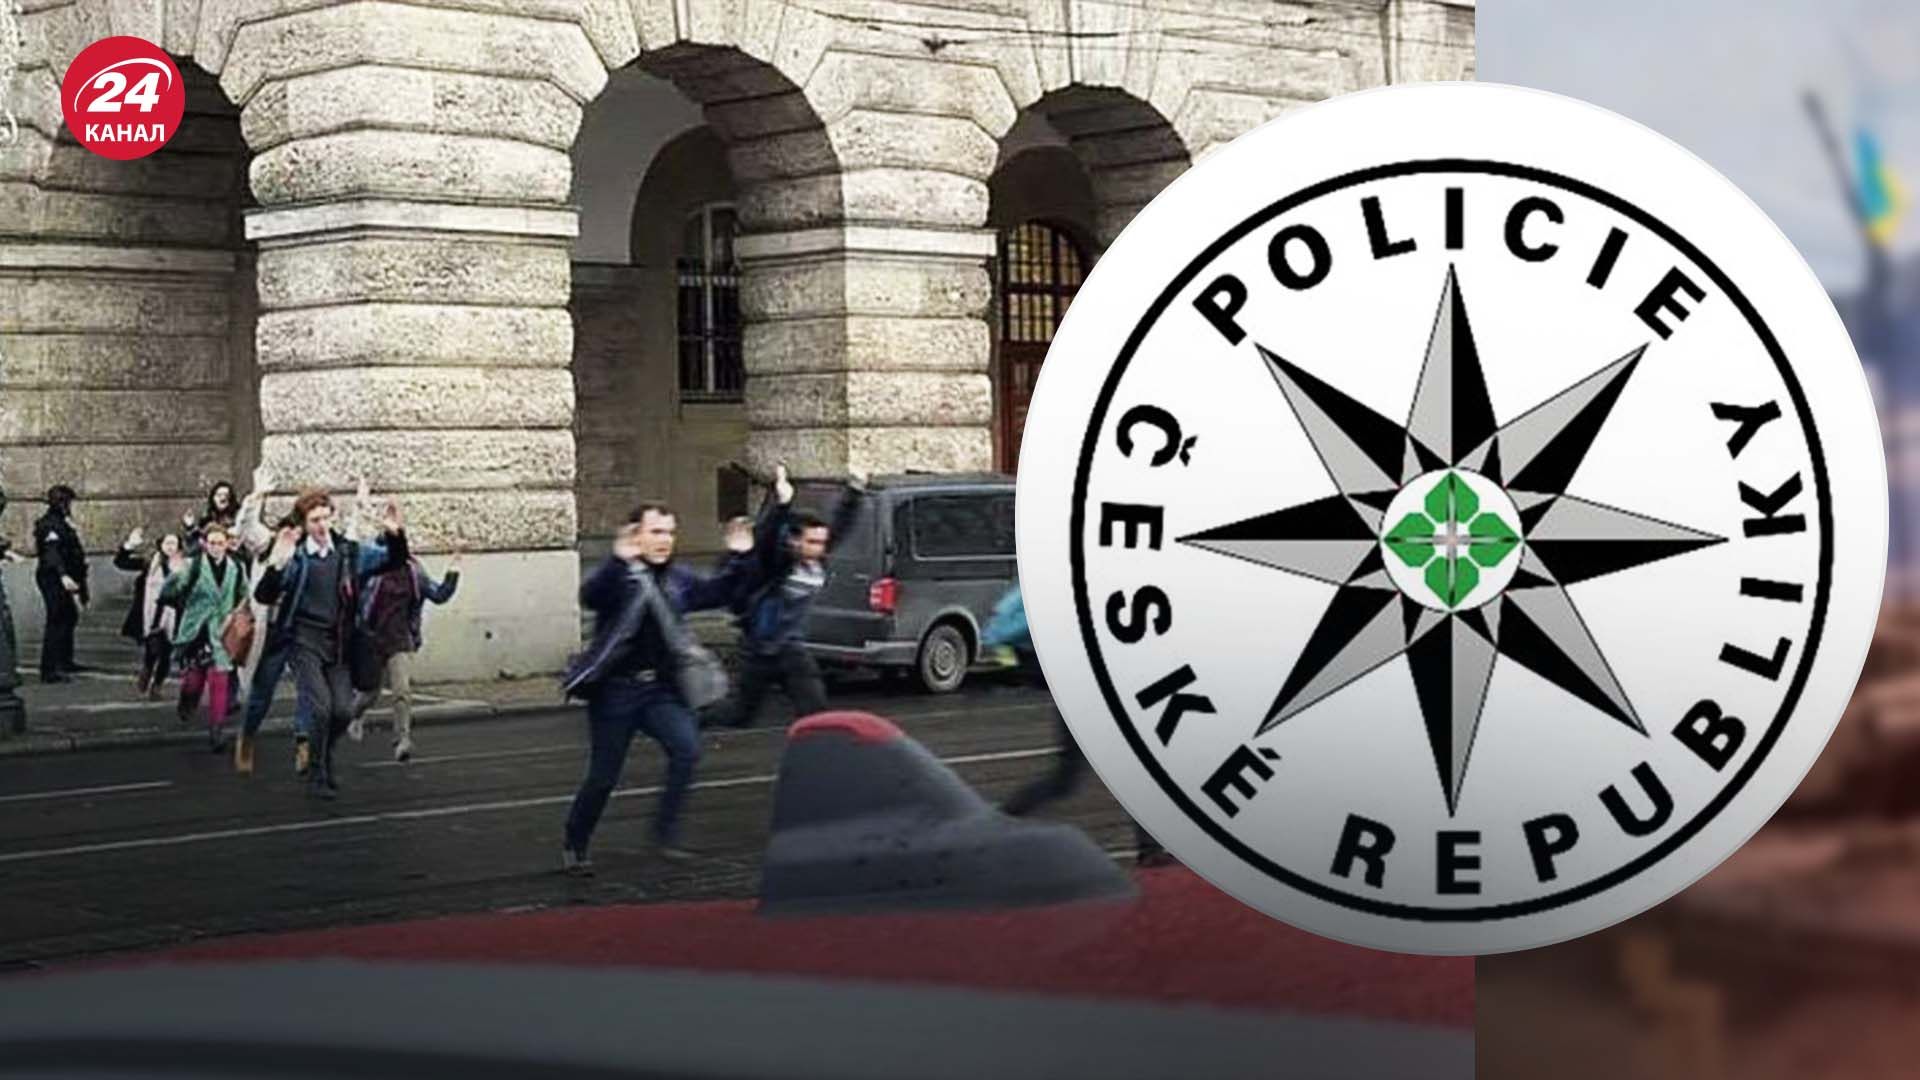 Поліція Чехії повідомила про схожі погрози після стрілянини в Карловому університету у Празі 